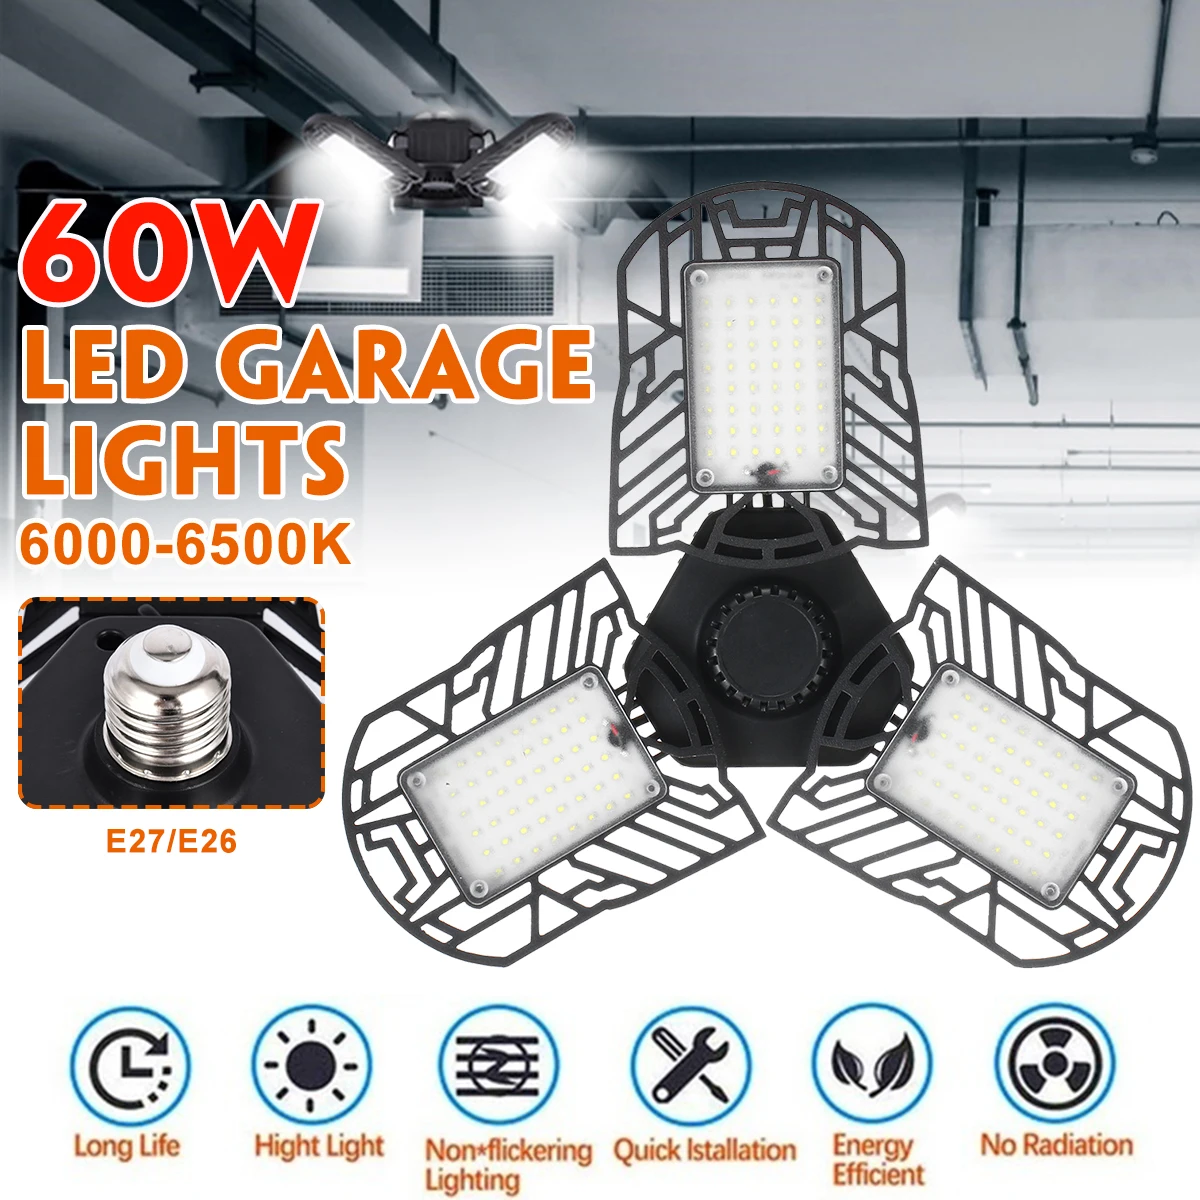 60 Вт 6000лм 144psc светодиодный деформируемый светильник гаражный свет AC170-265V светодиодный шахтерские лампы для гаража/чердака/подвала/дома